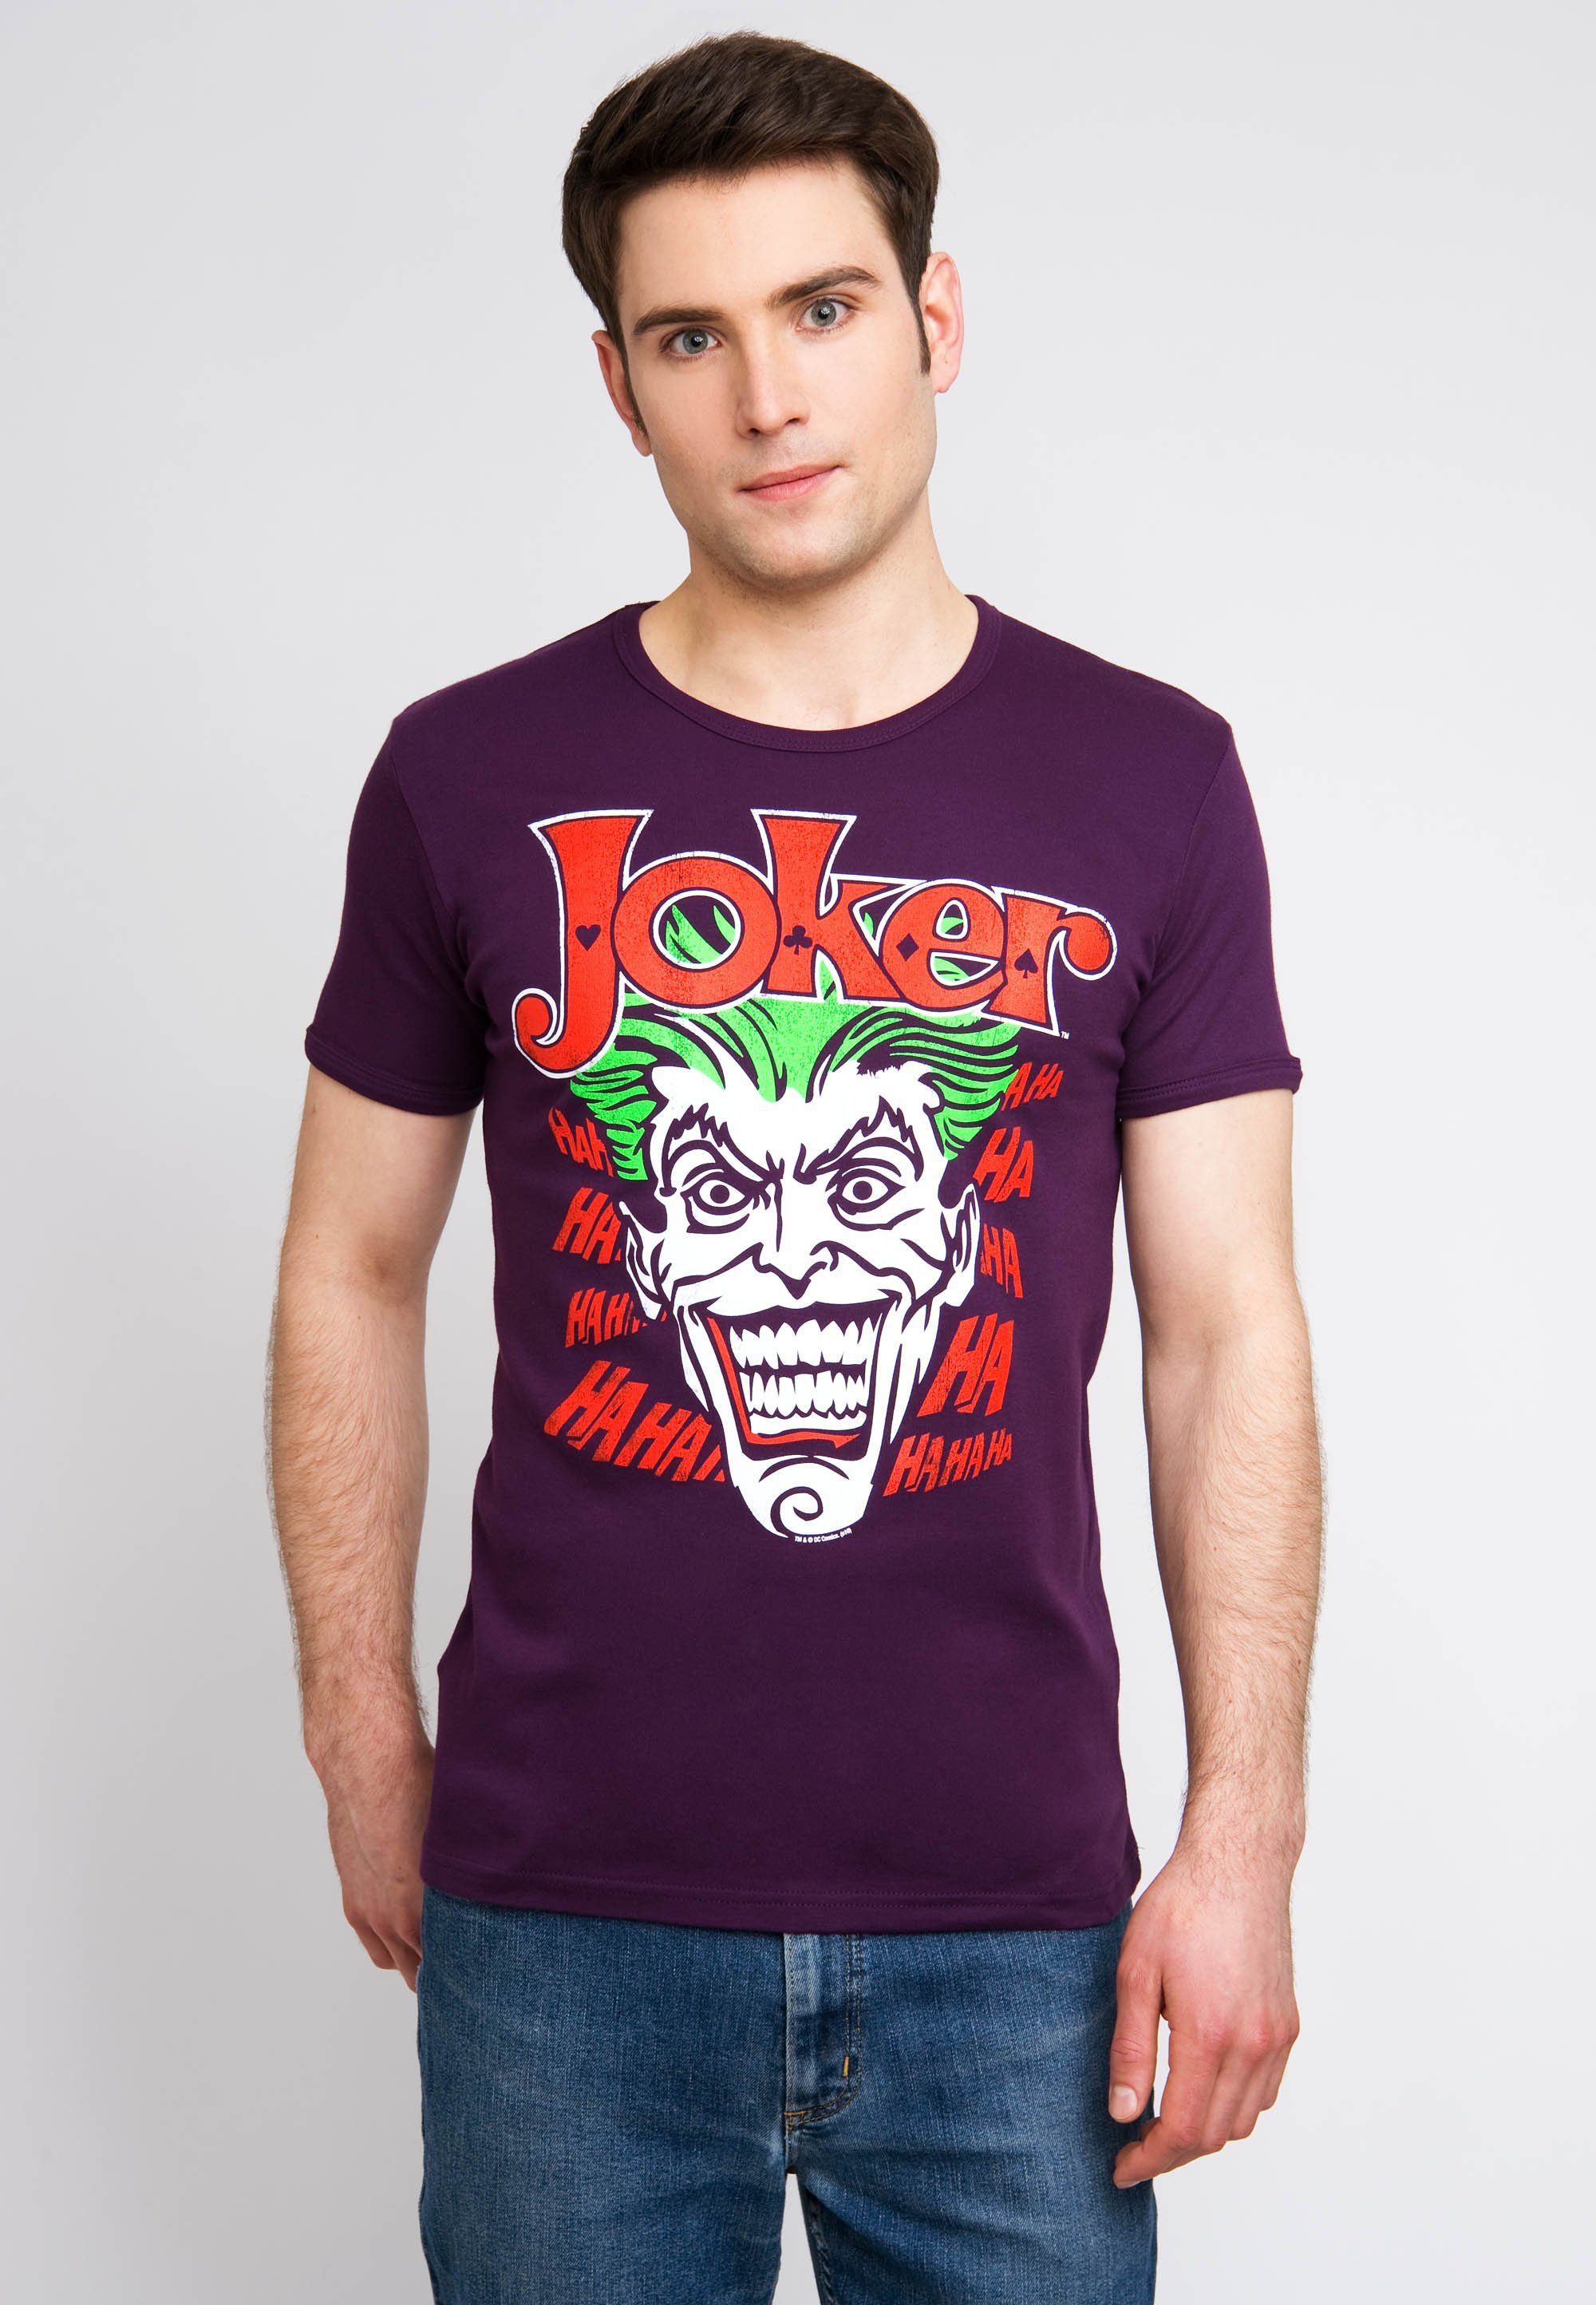 LOGOSHIRT T-Shirt Joker Batman mit kultigem Joker-Print